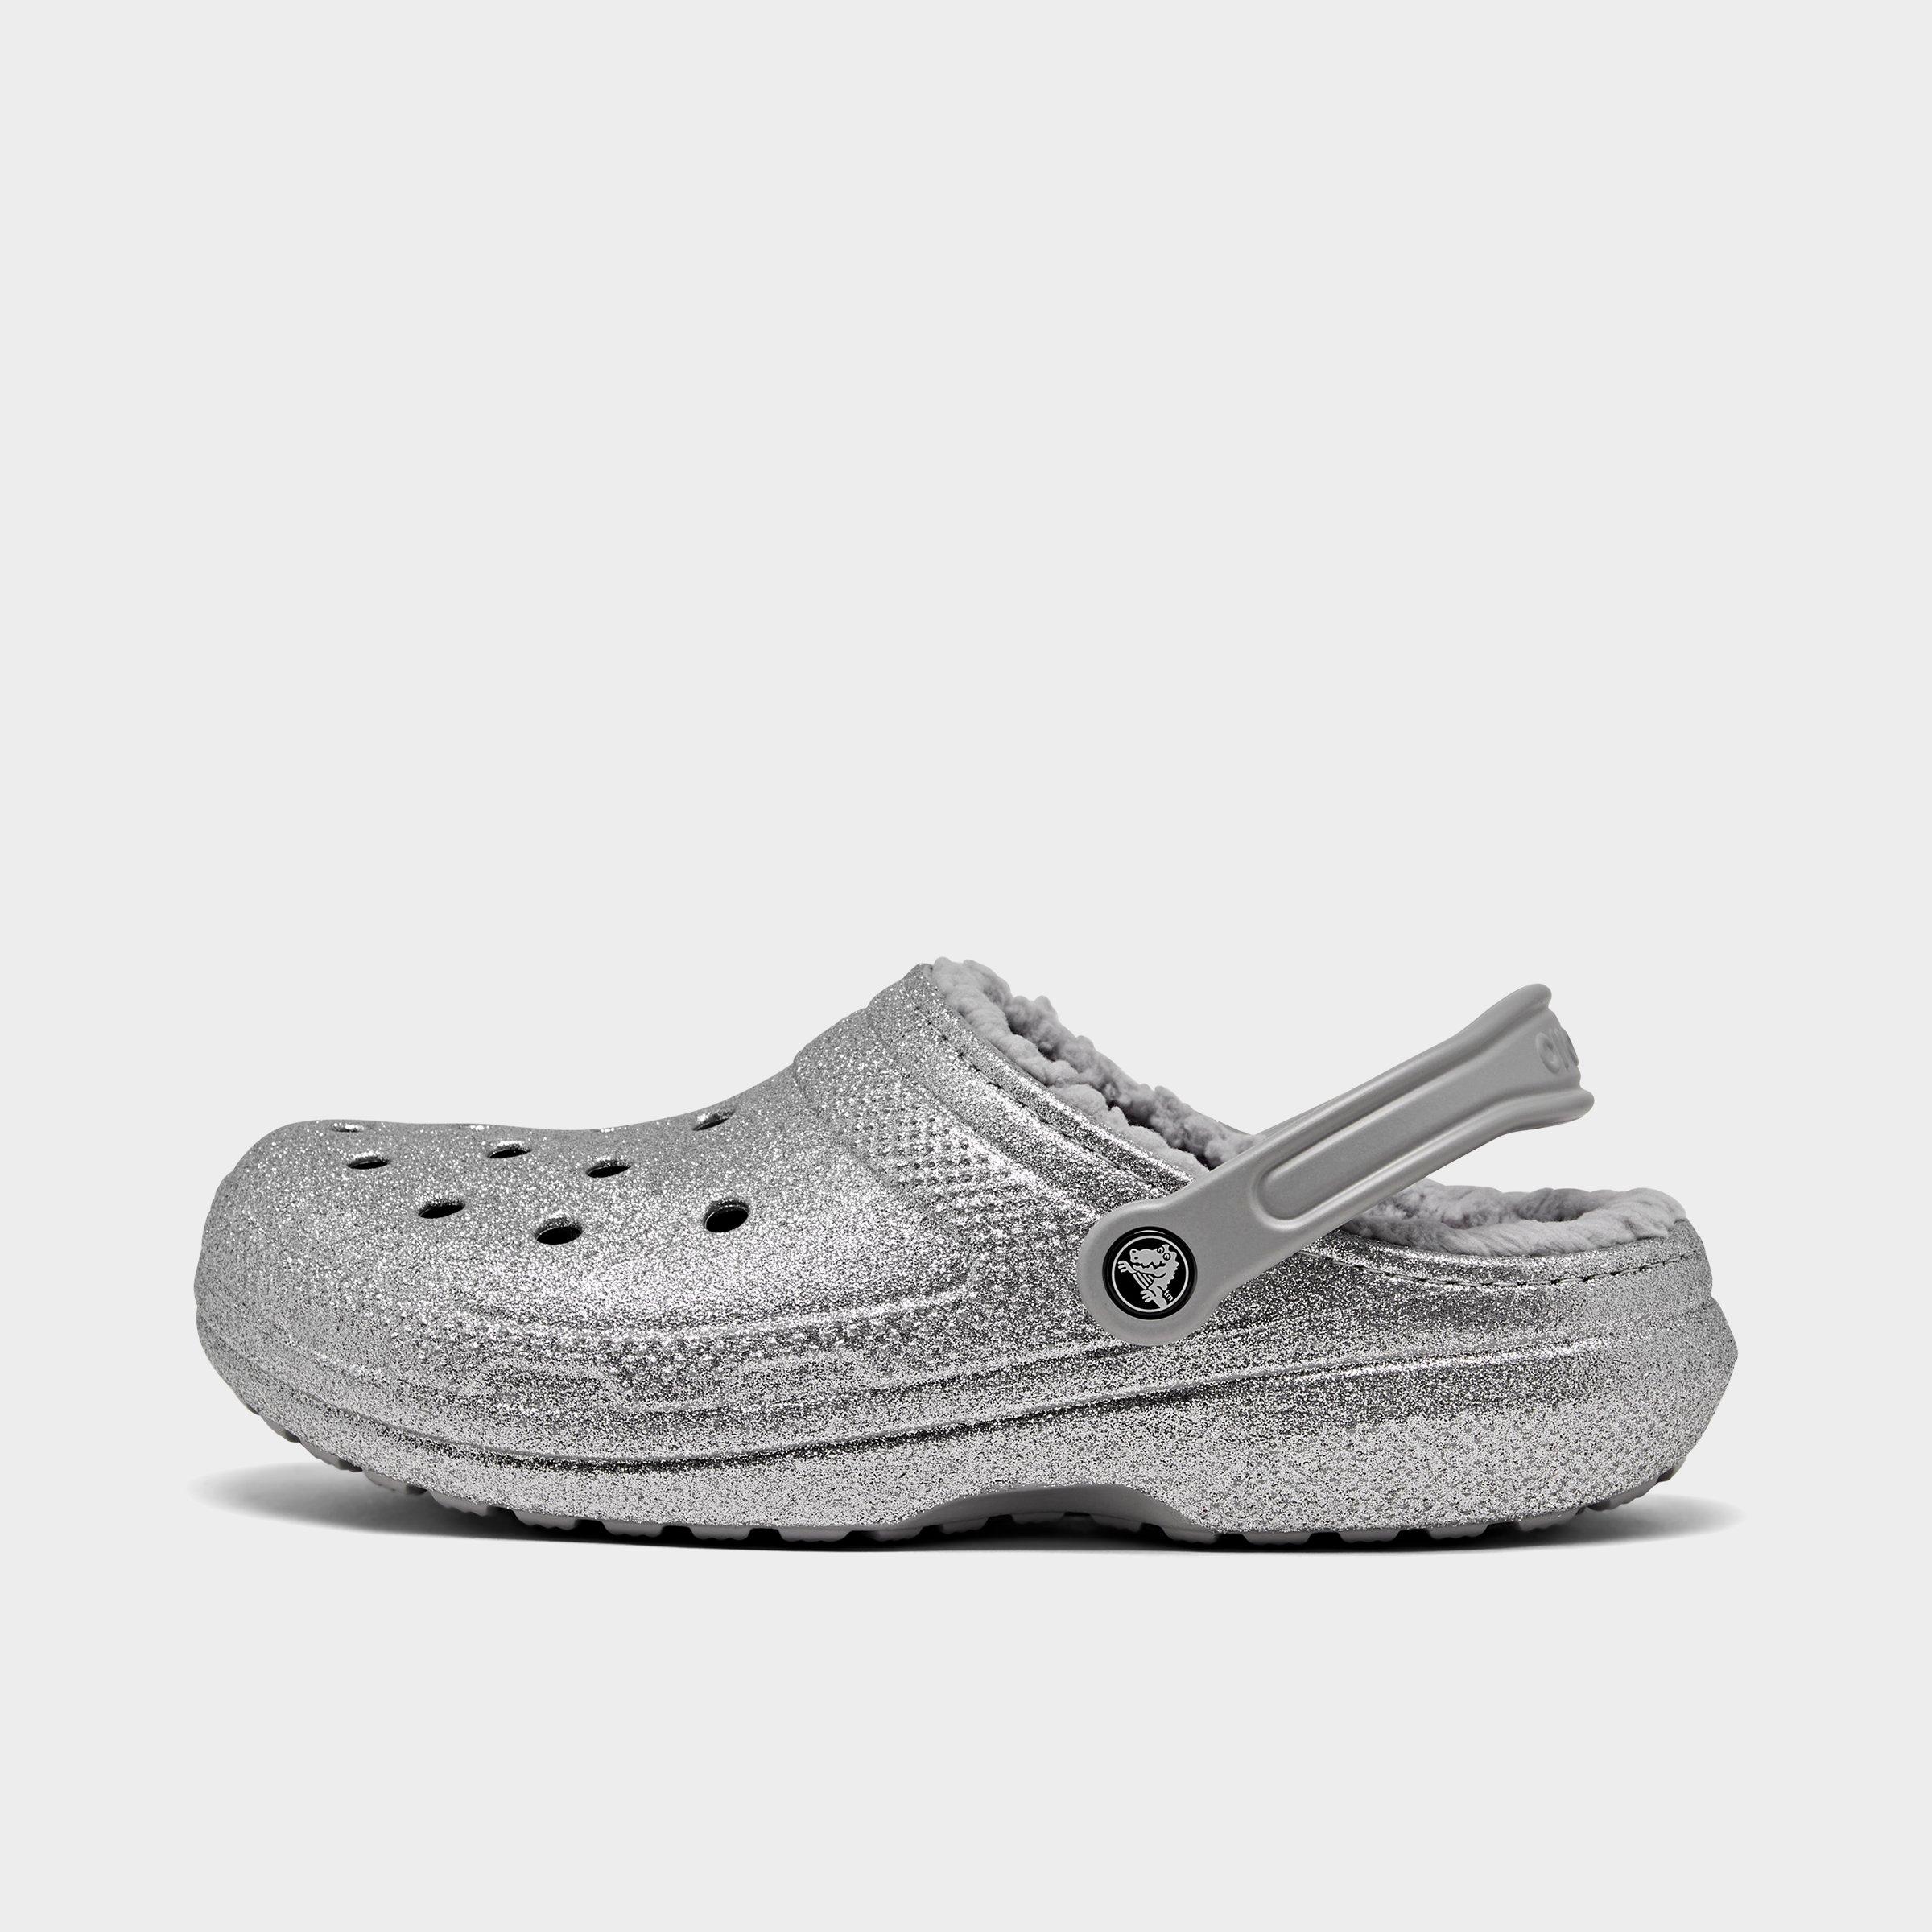 silver glitter crocs women's